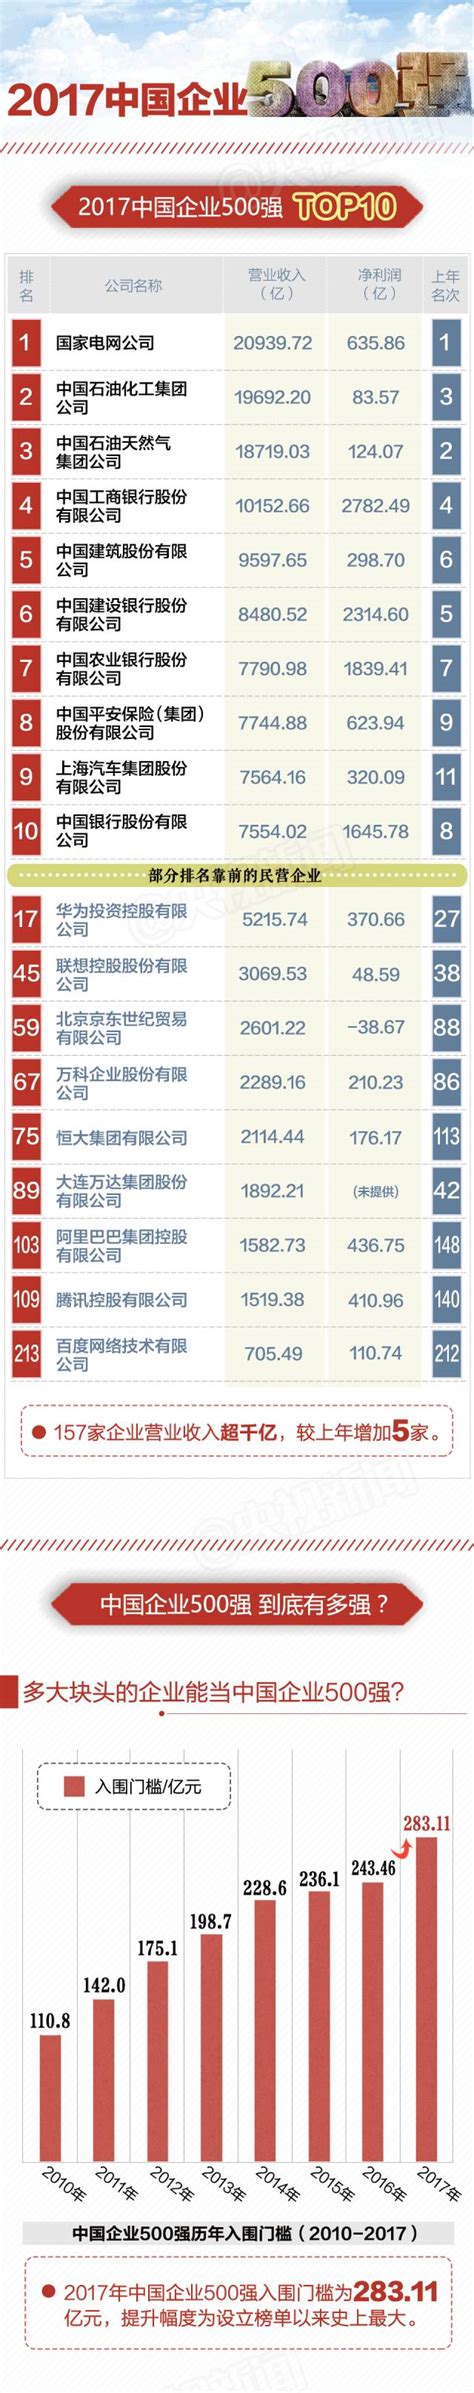 24家河北企业上榜2019年中国企业500强榜单-河北经济网-长城网